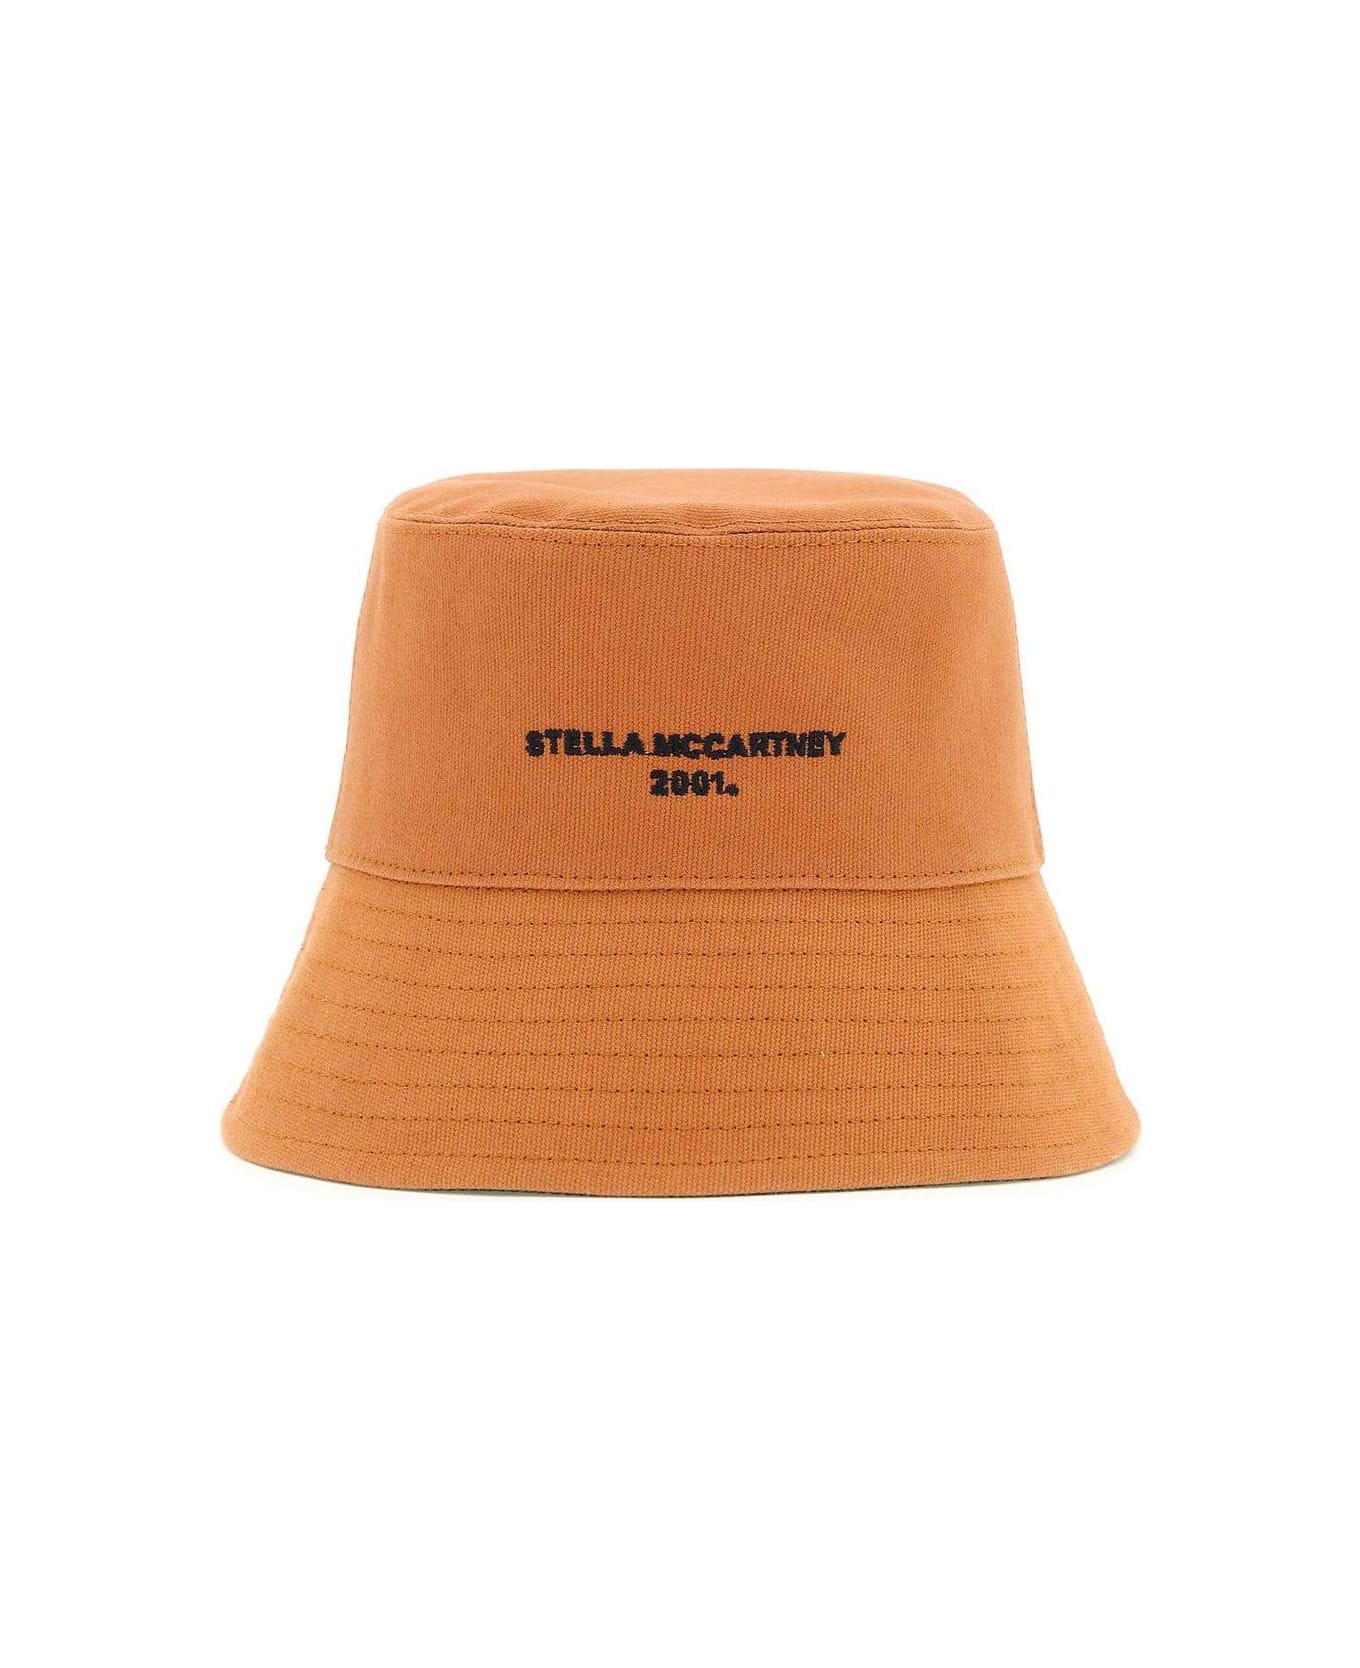 Stella McCartney Logo Embroidered Wide Brim Bucket Hat - Brown